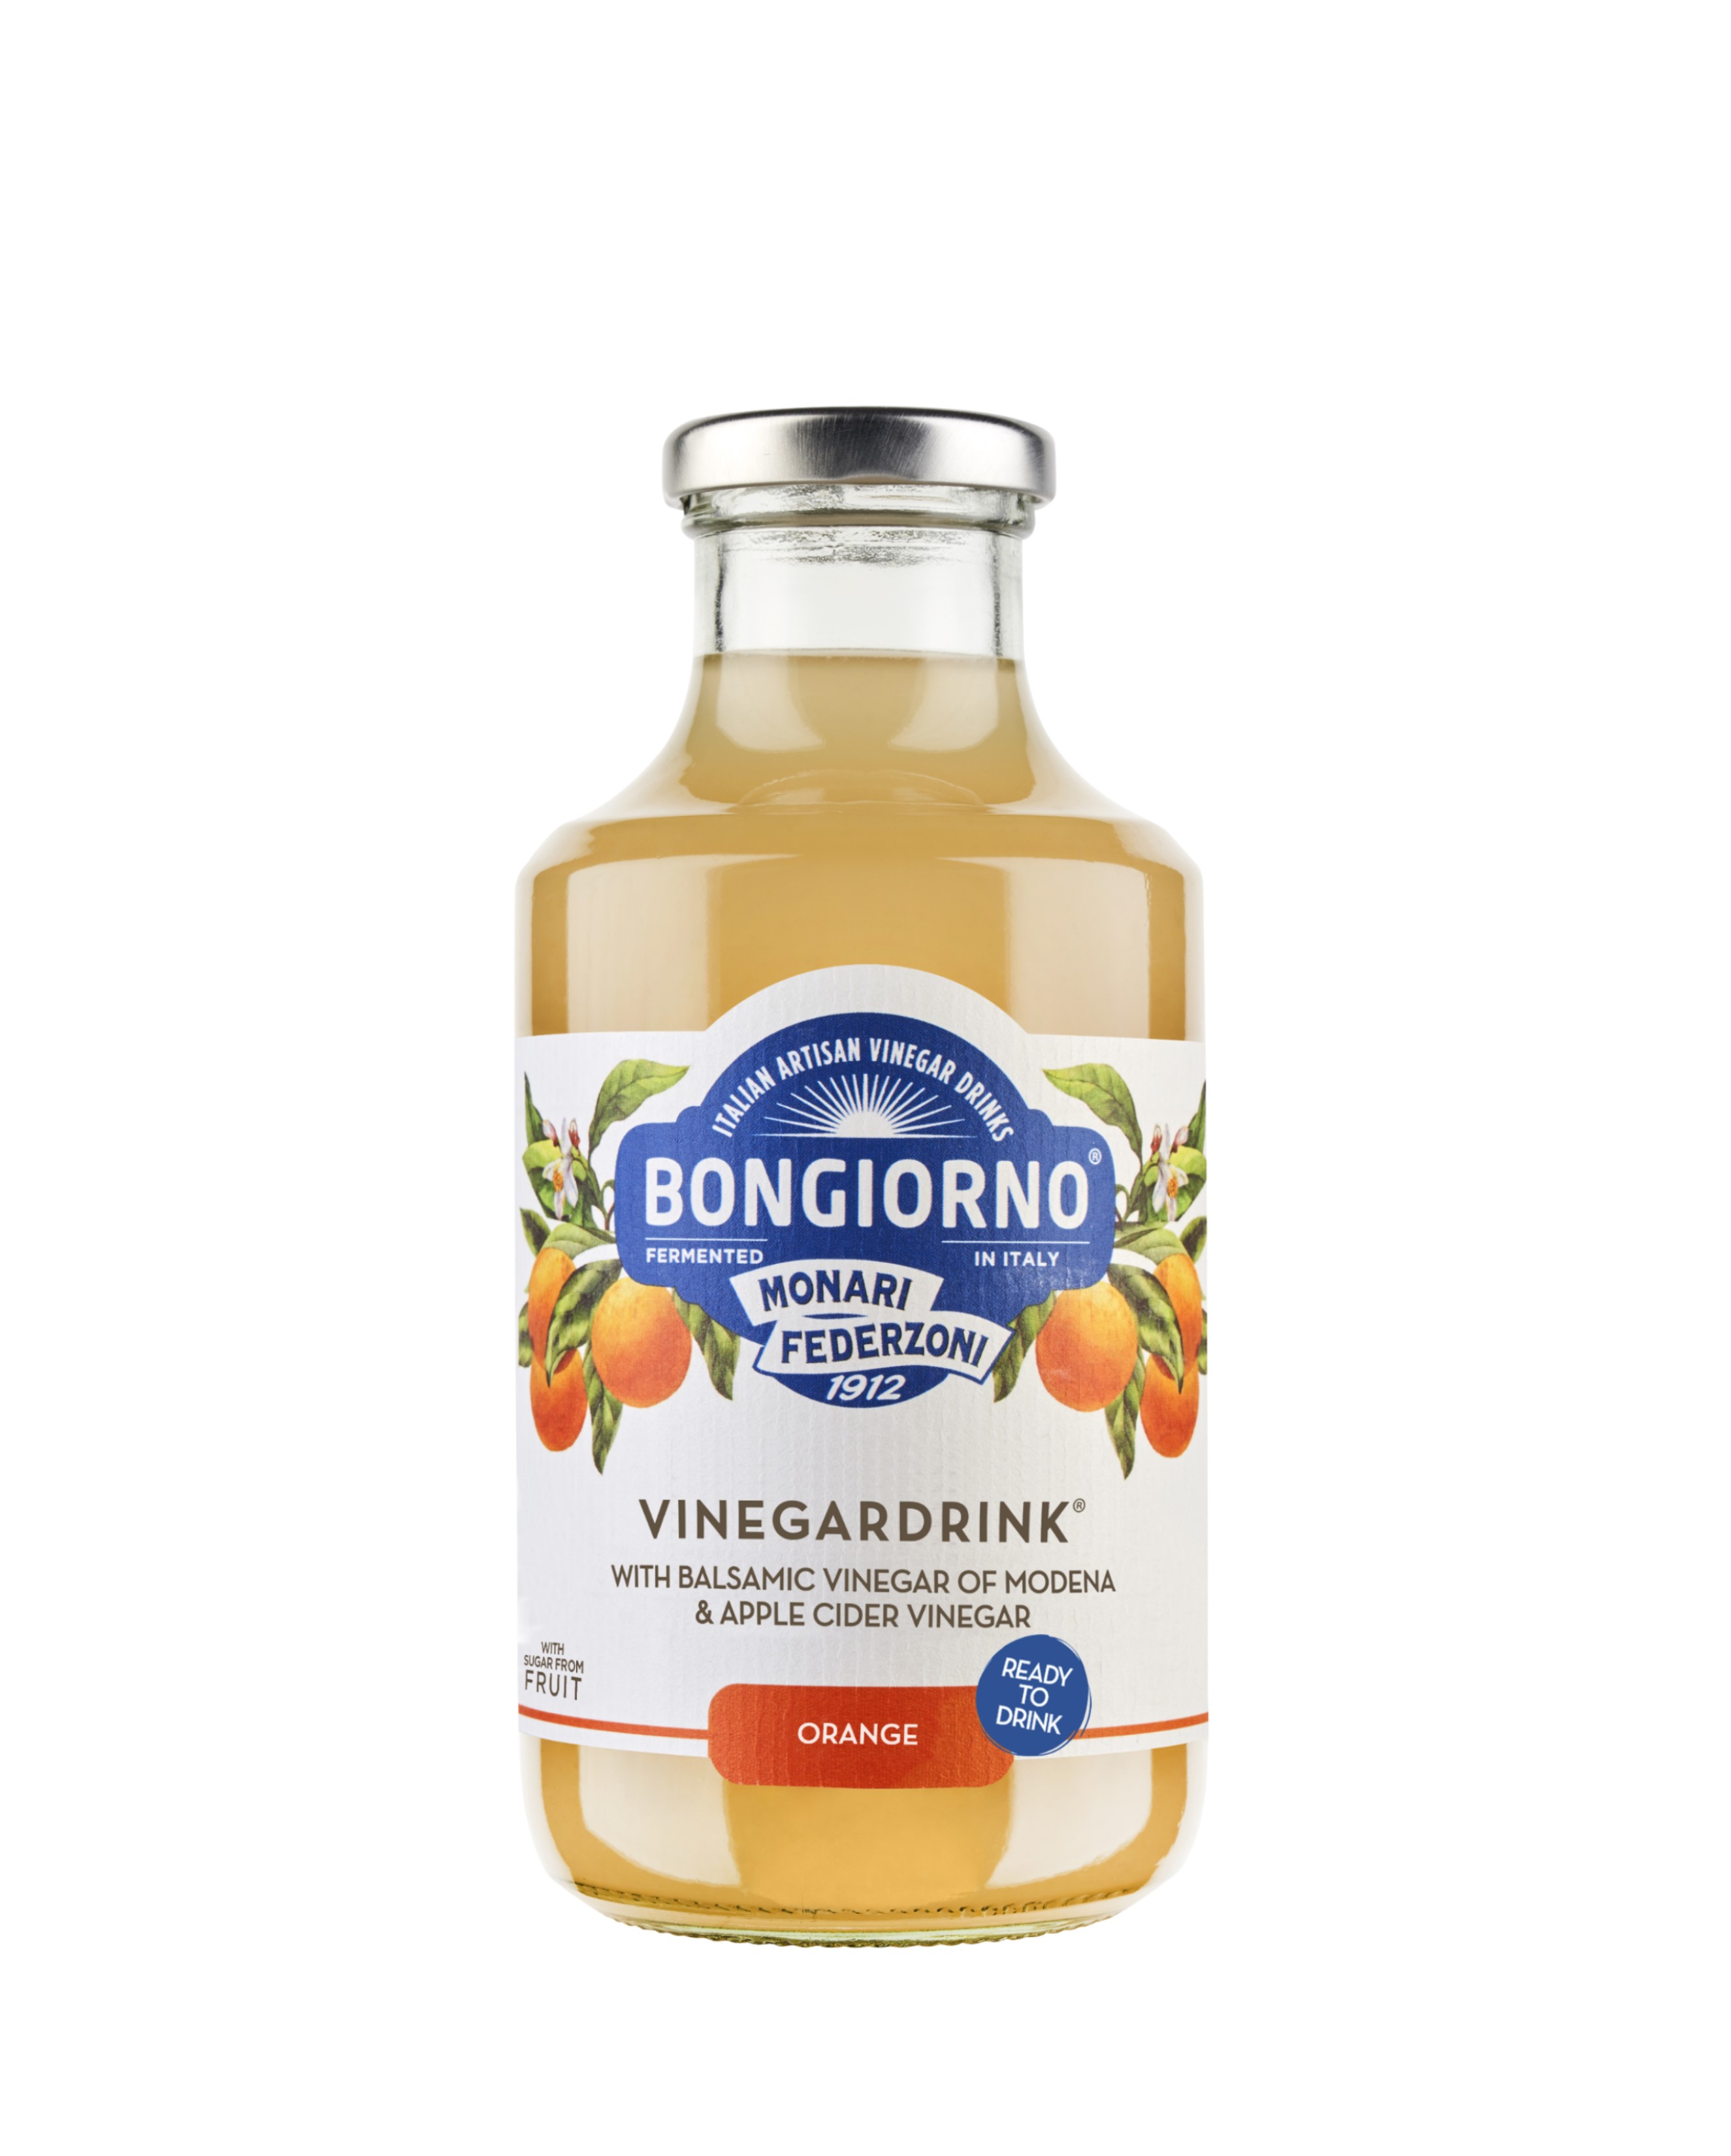 MONARI Vinegardrink Orange